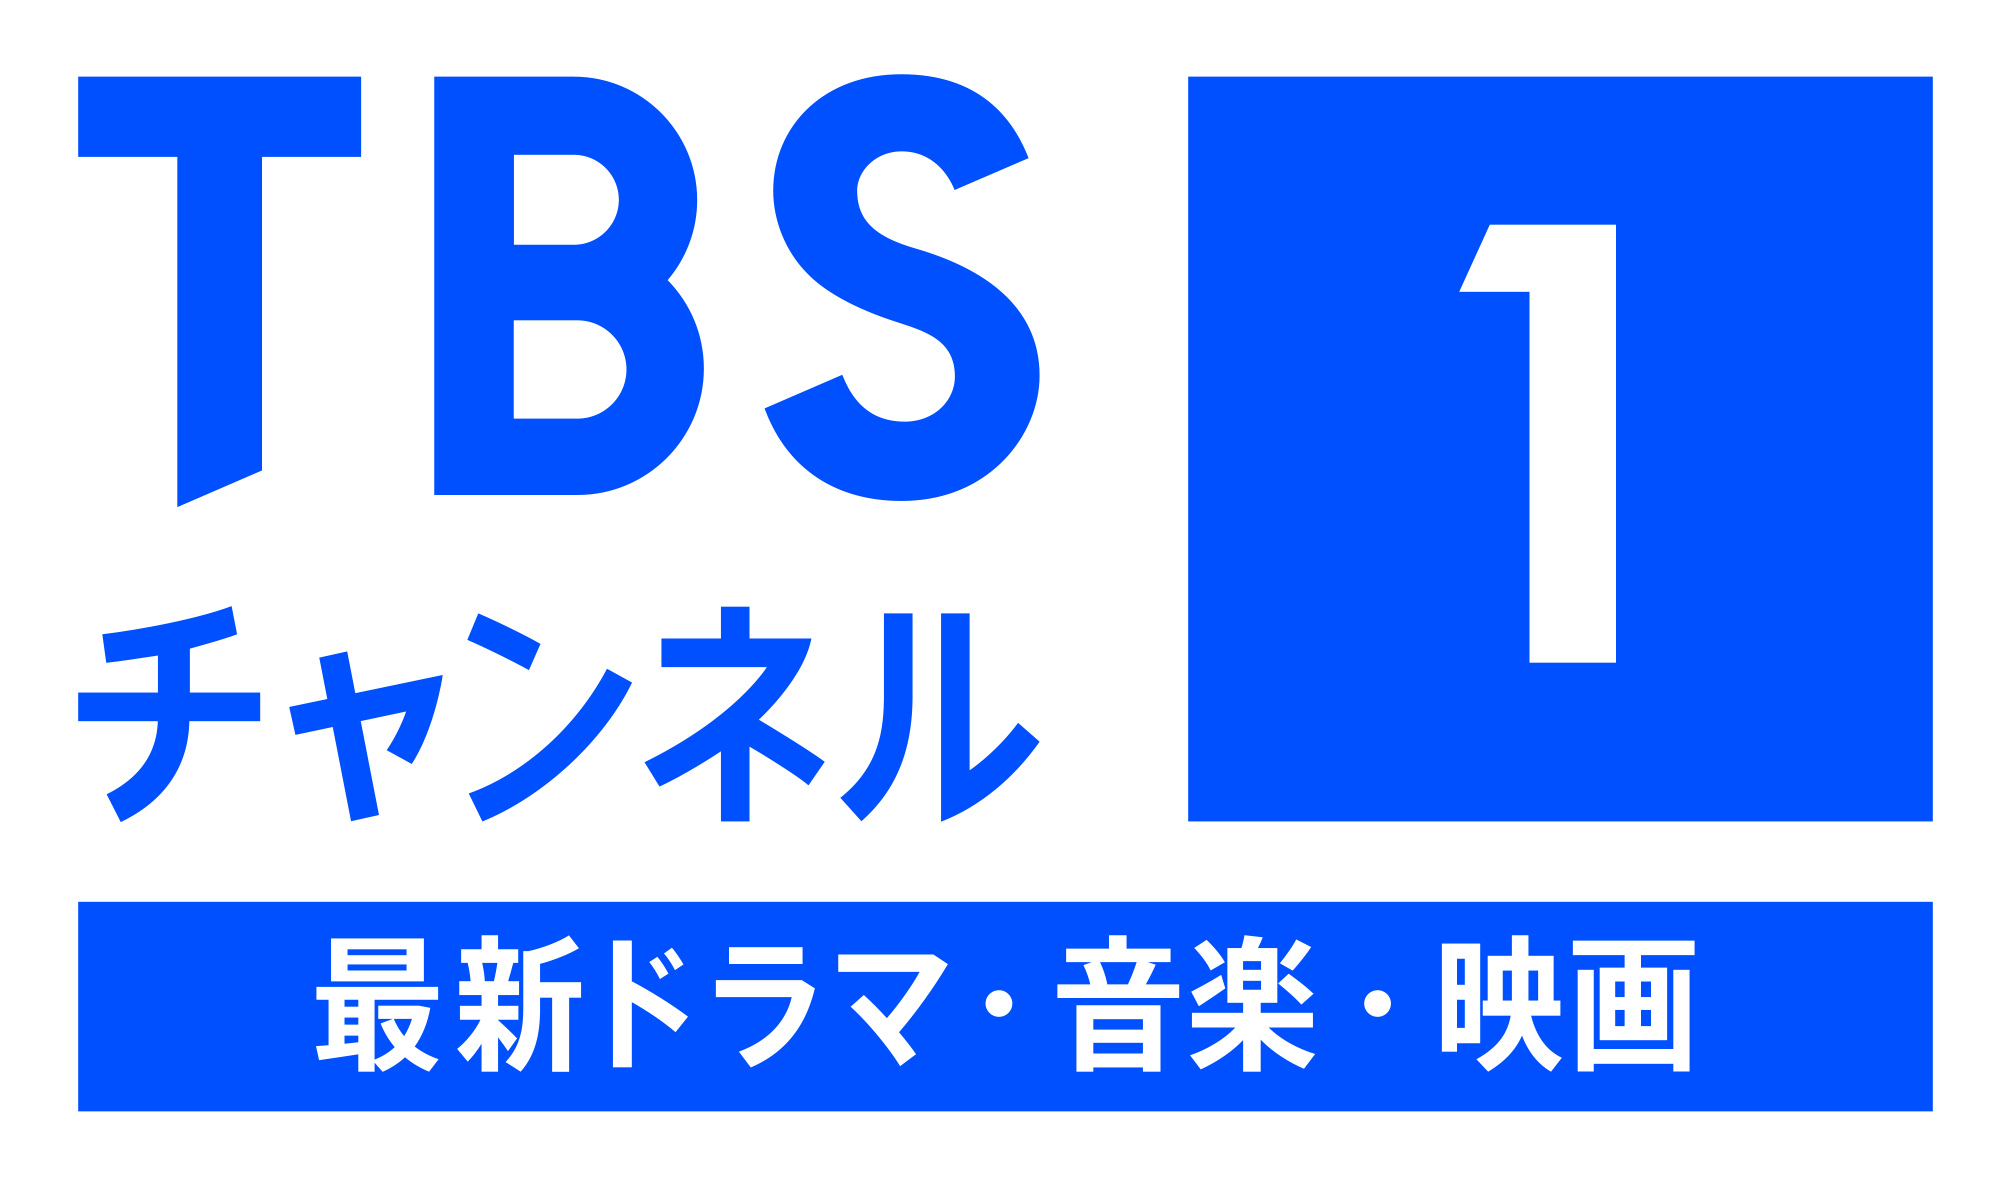 Tbs チャンネル 1